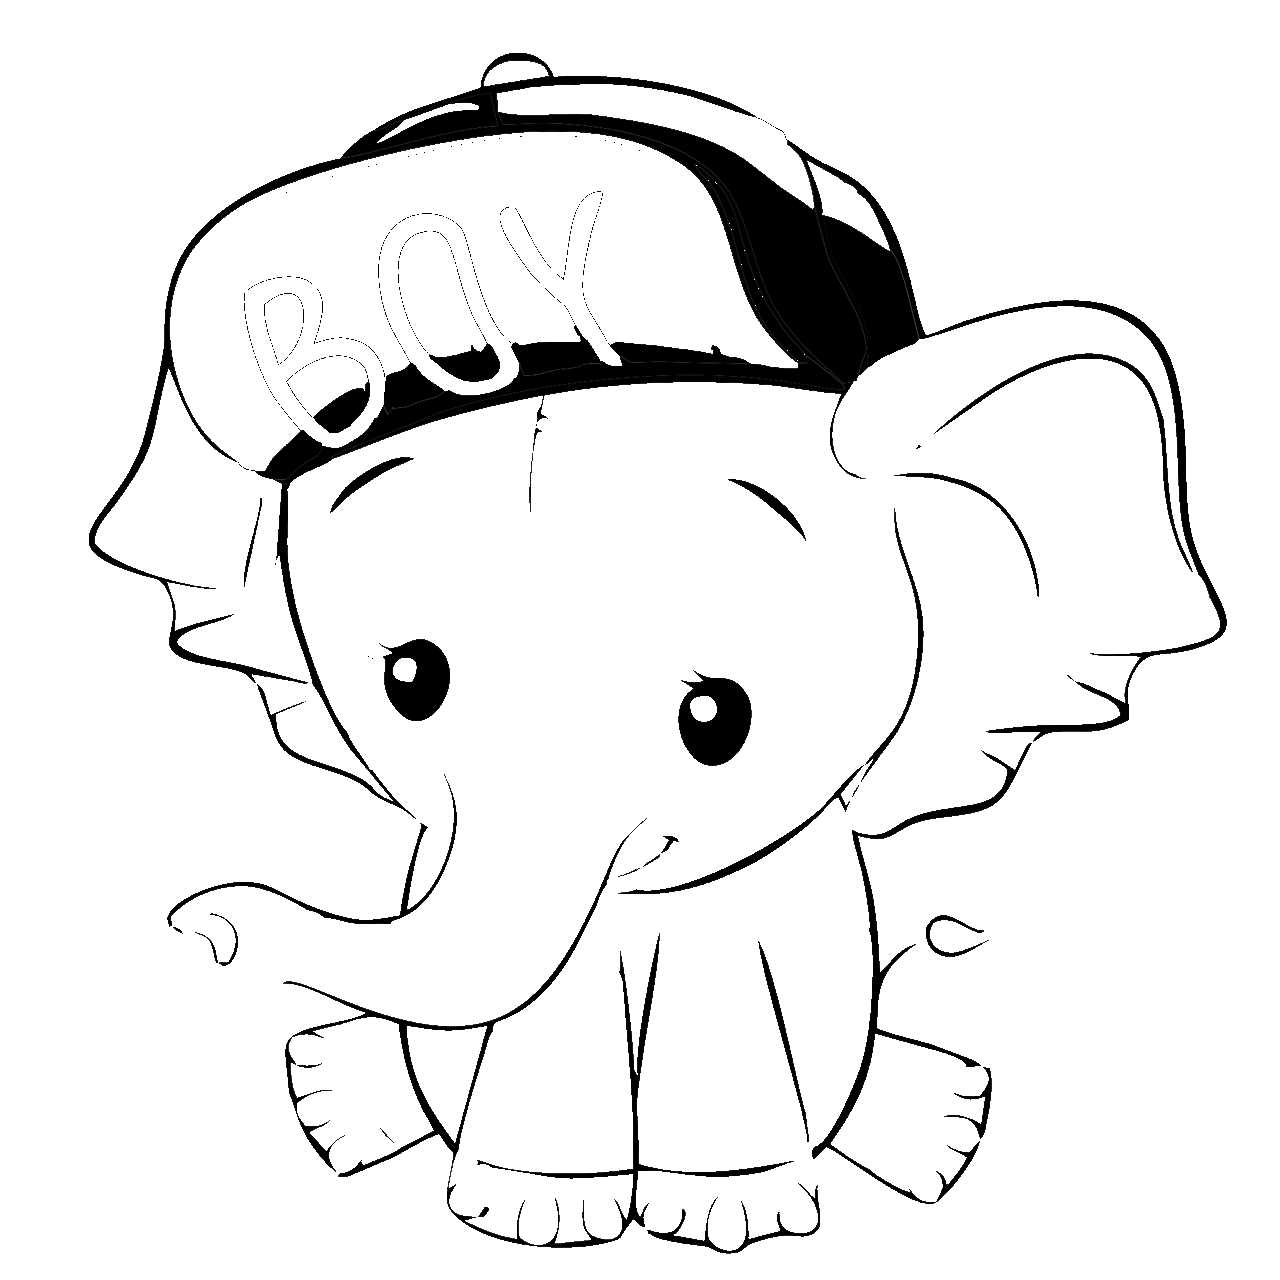 Disegno da colorare di elefante kawaii con cappello da baseball